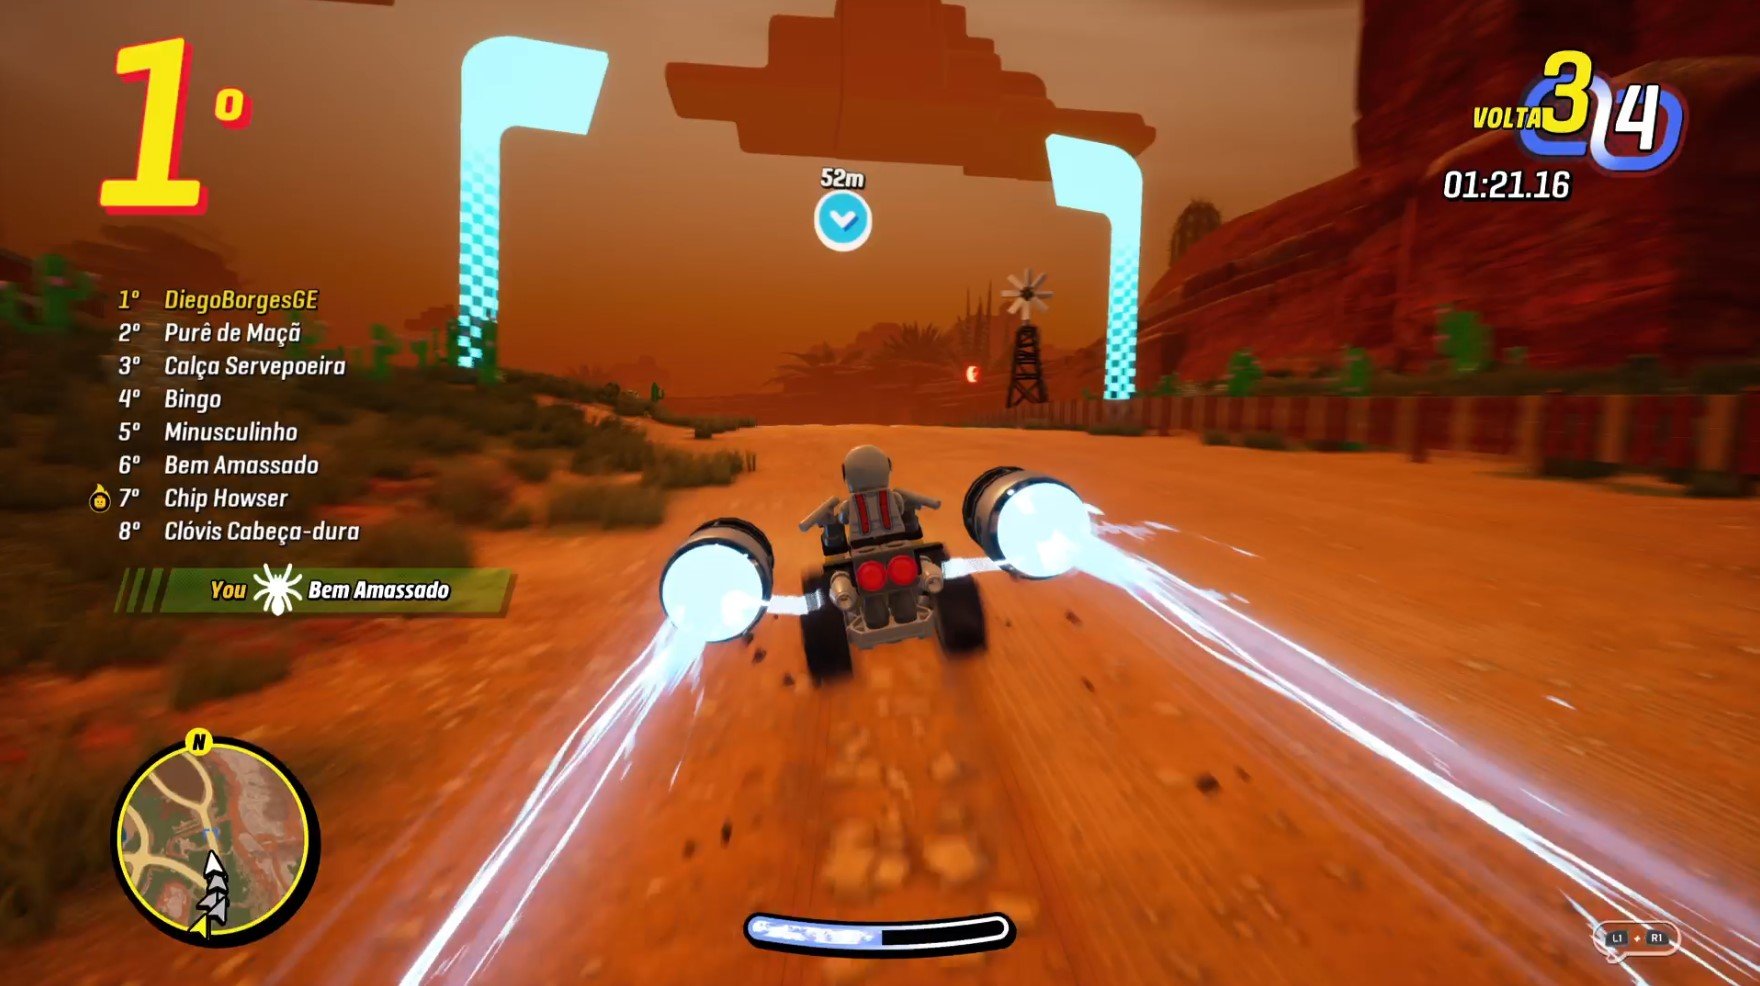 O game traz elementos na sua jogabilidade que lembram a franquia Mario Kart